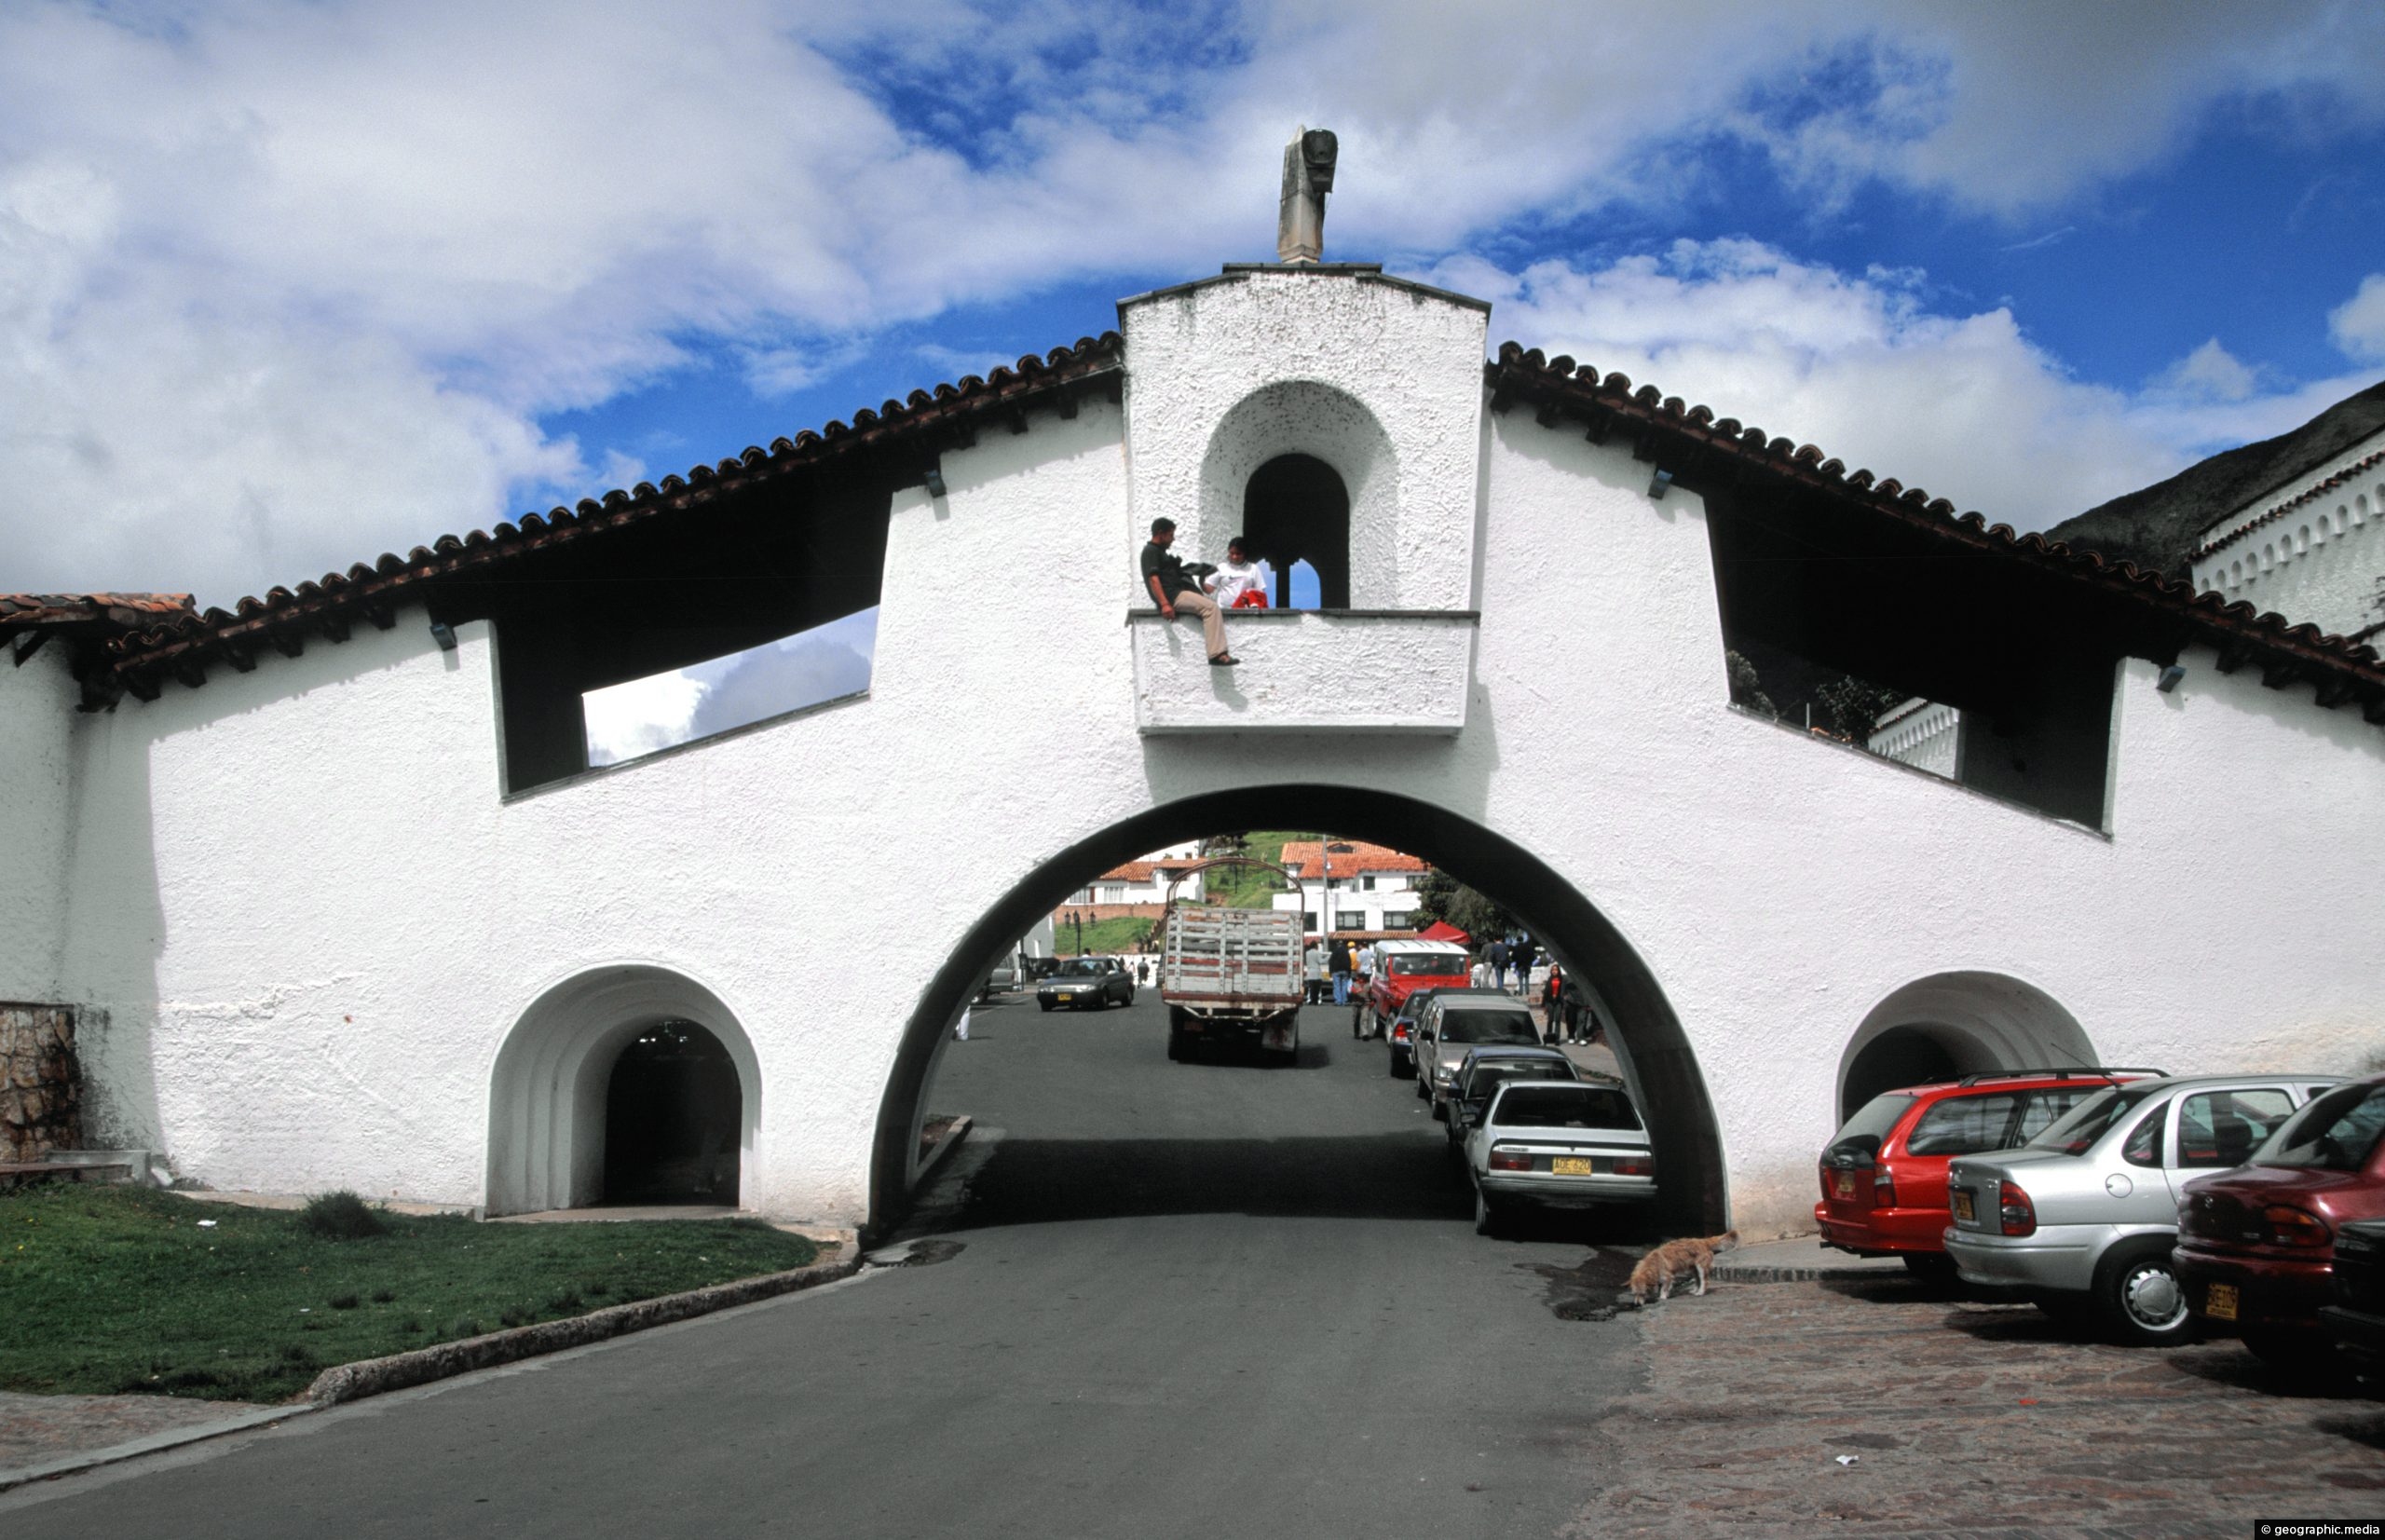 Guatavita Arch in Cundinamarca